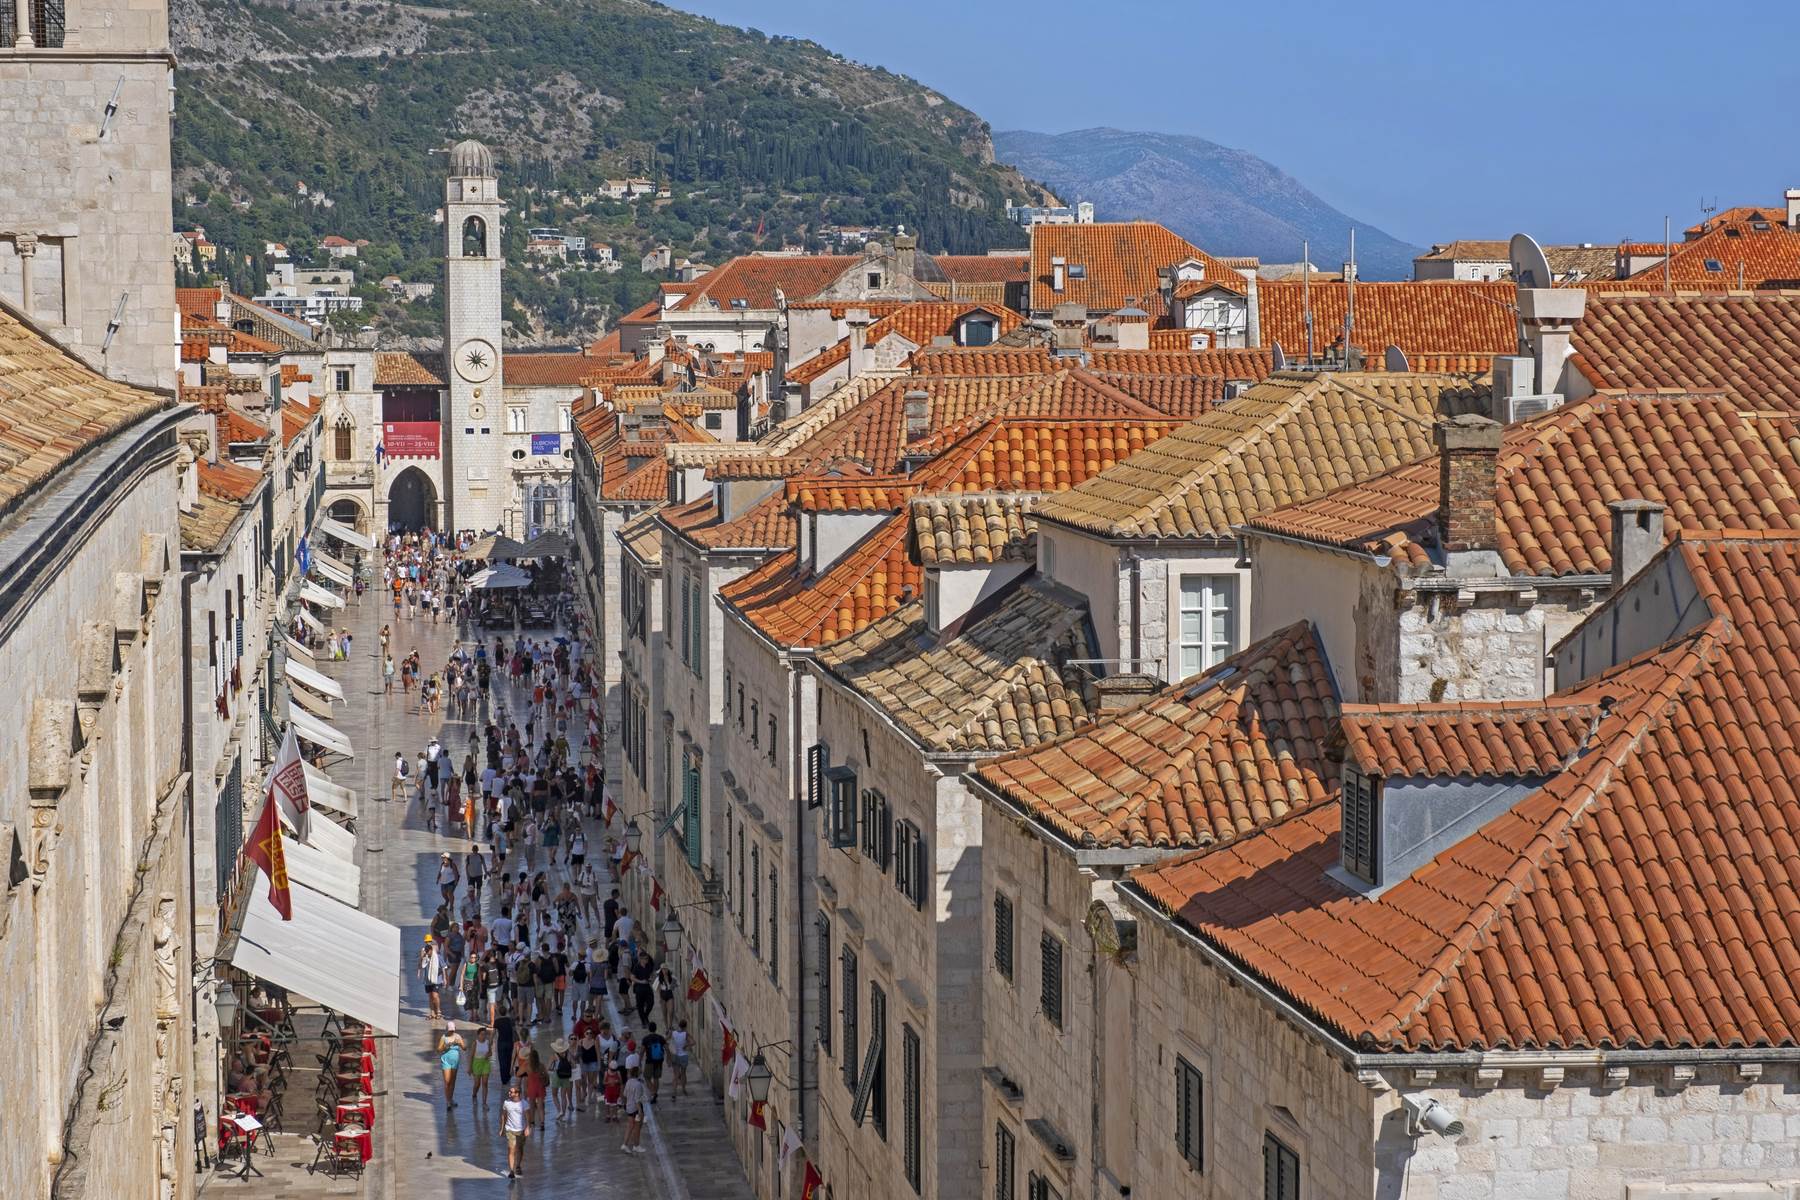  Turisti u Dubrovniku 